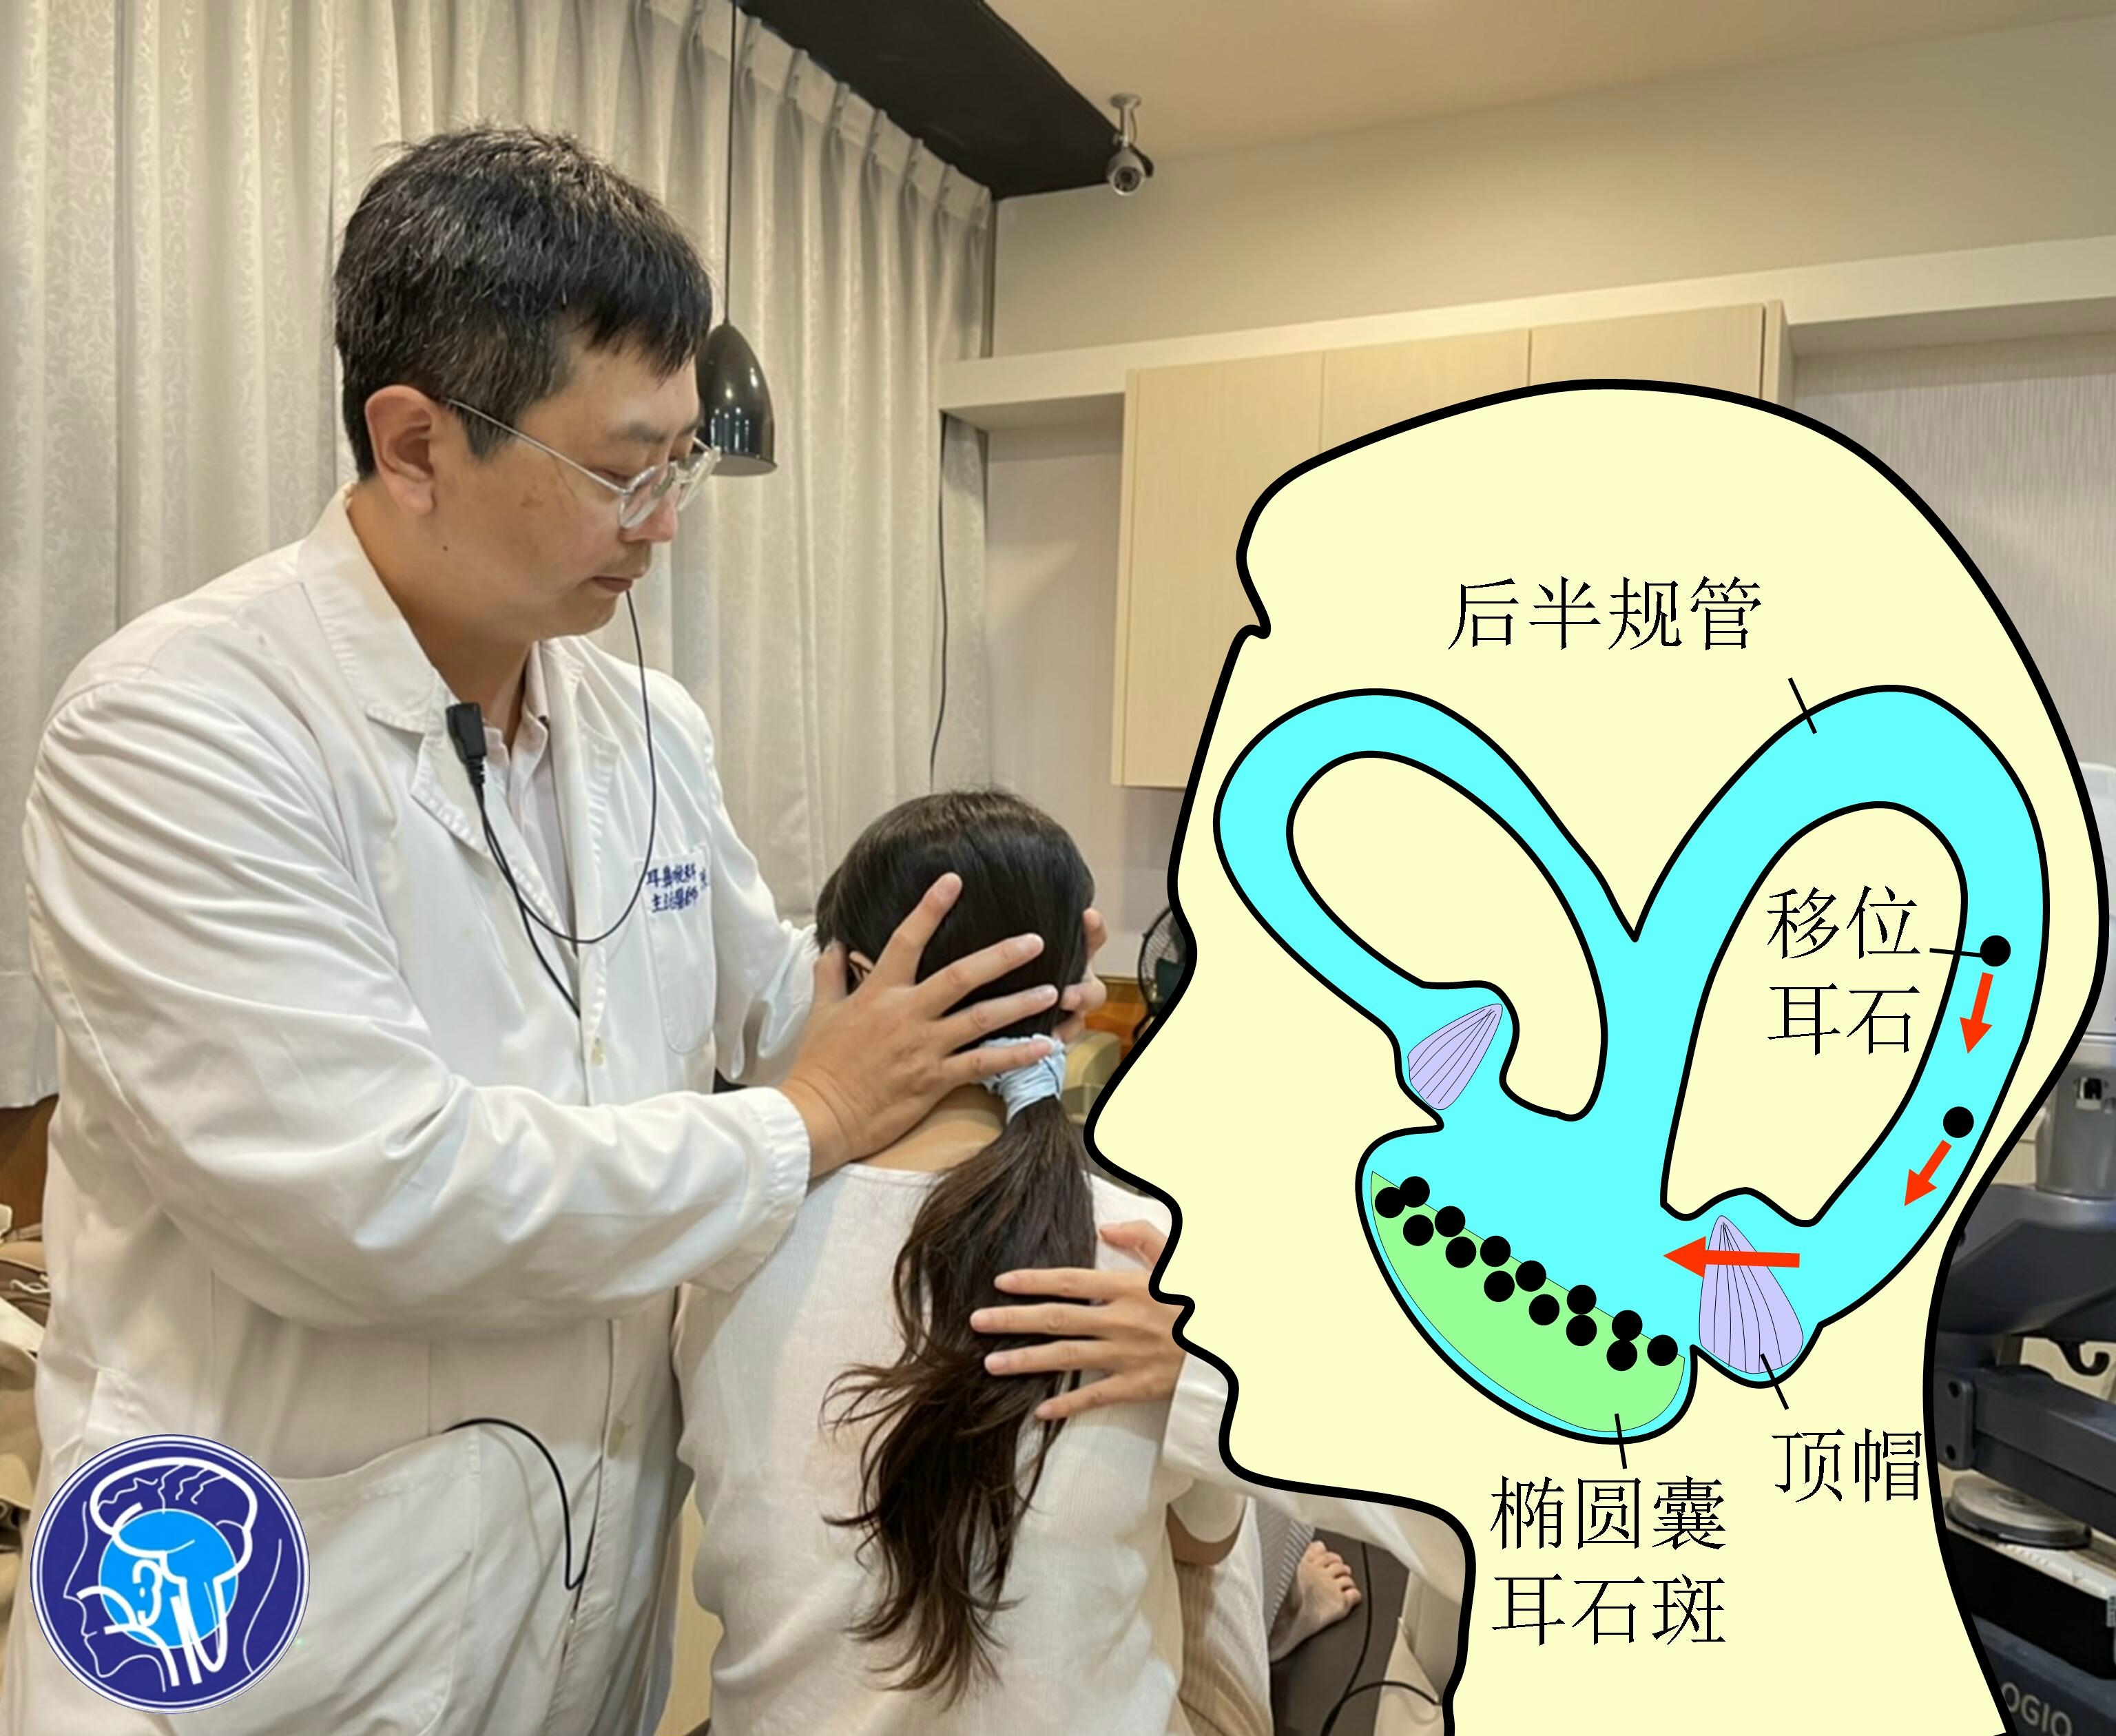 40岁女子经常肩颈痠痛 睡觉时头晕 就医后发现是半规管内耳石沉积